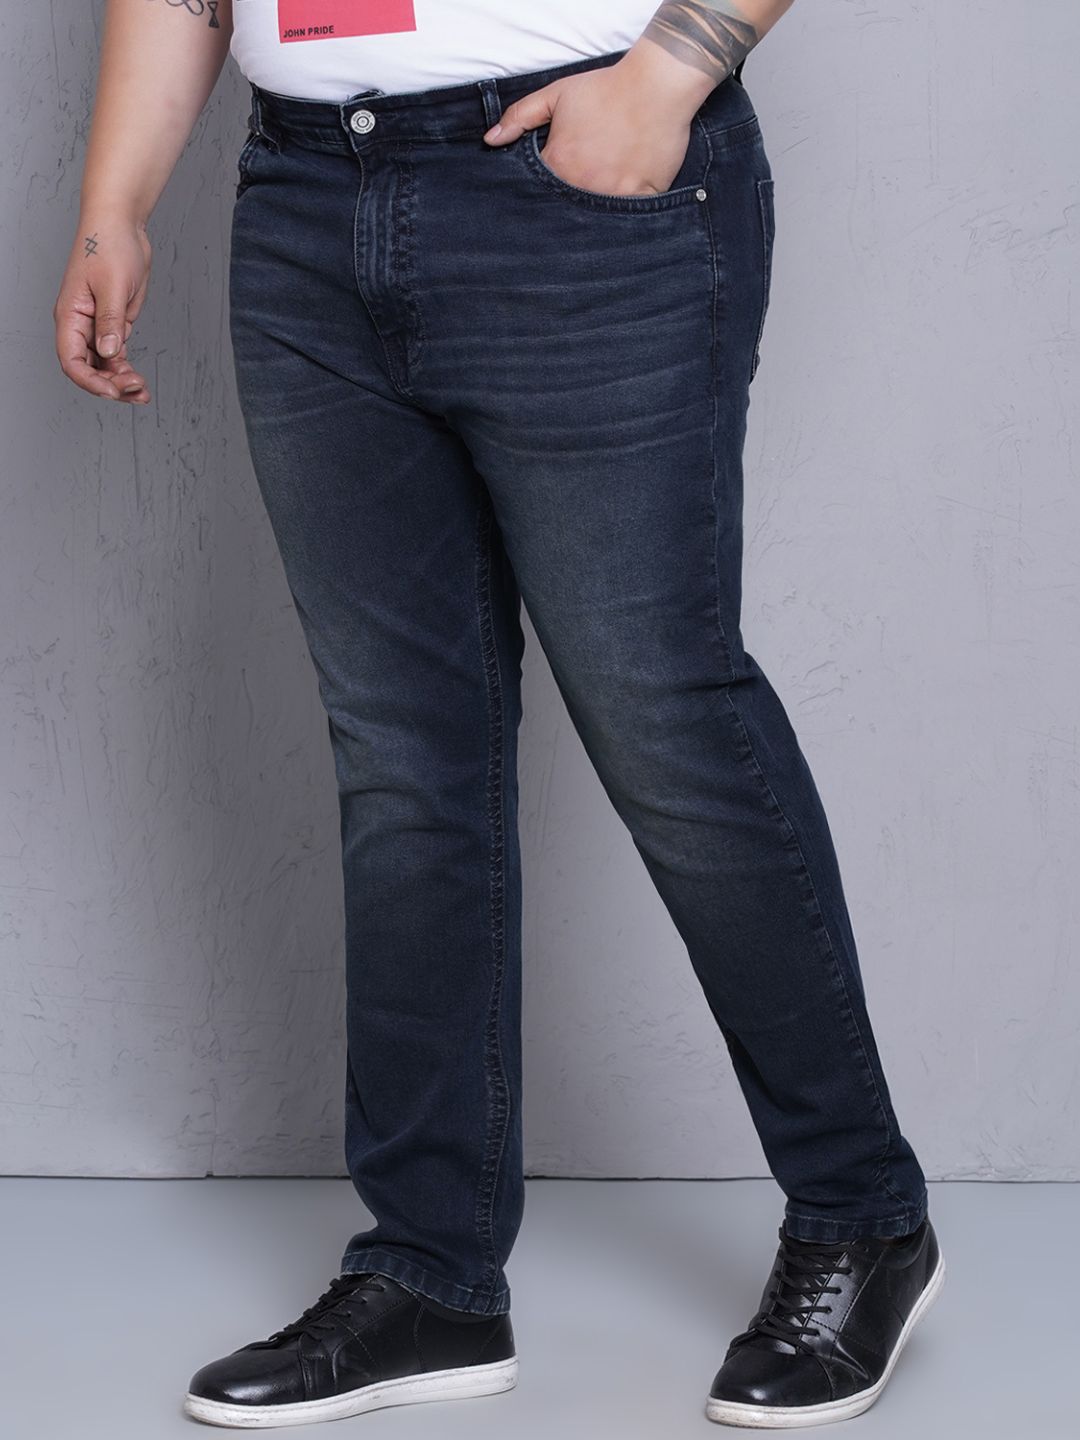 bottomwear/jeans/JPJ12436/jpj12436-4.jpg